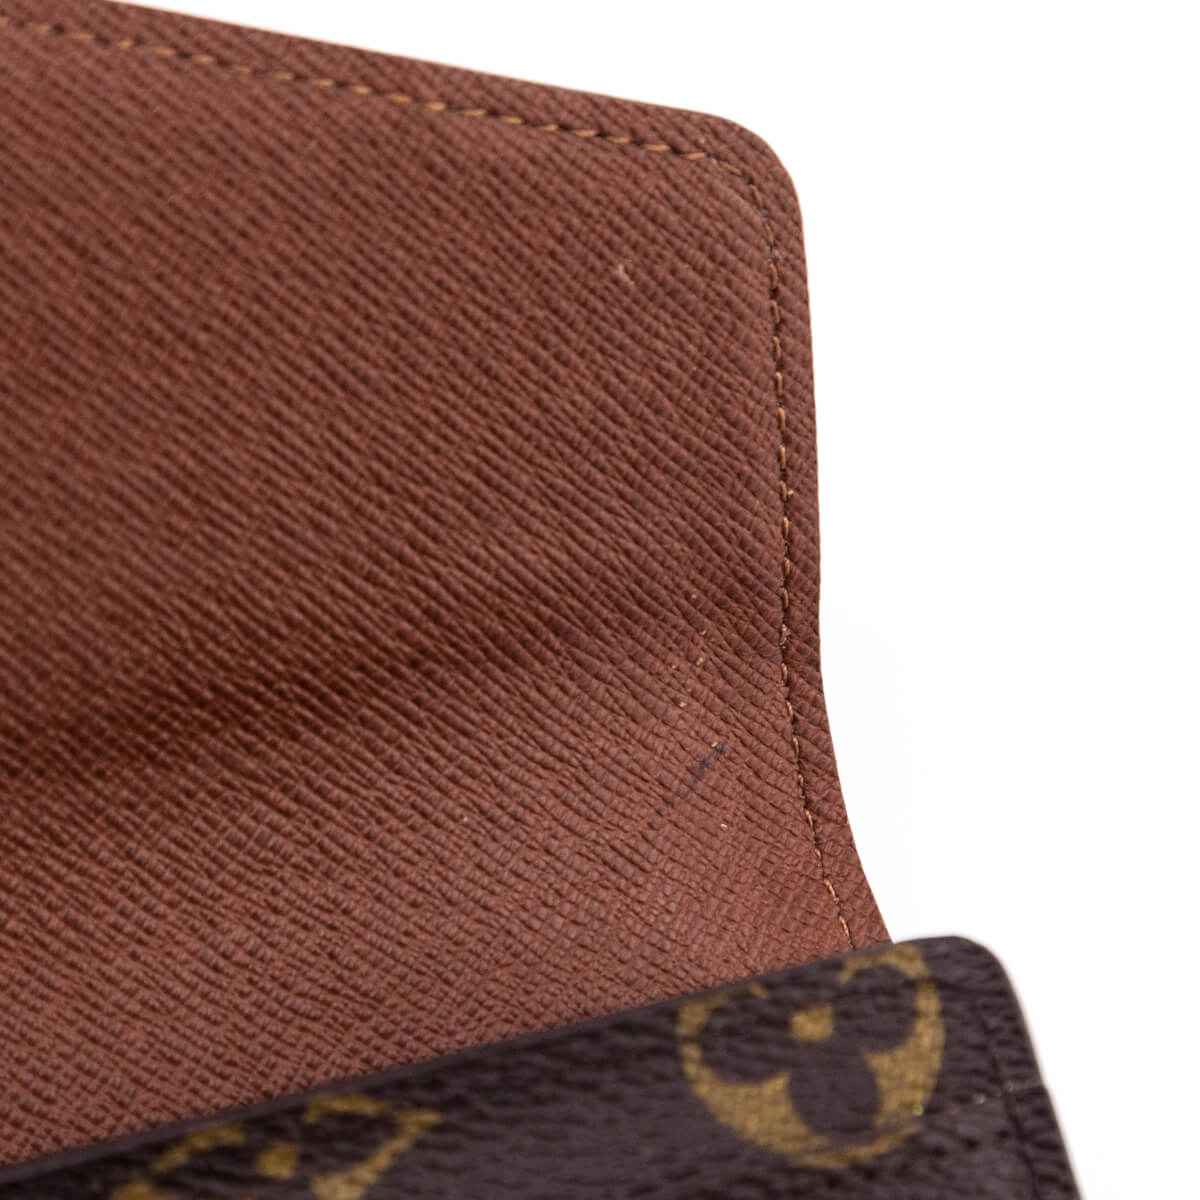 Shop Louis Vuitton MONOGRAM Sarah wallet (M60531) by iRodori03